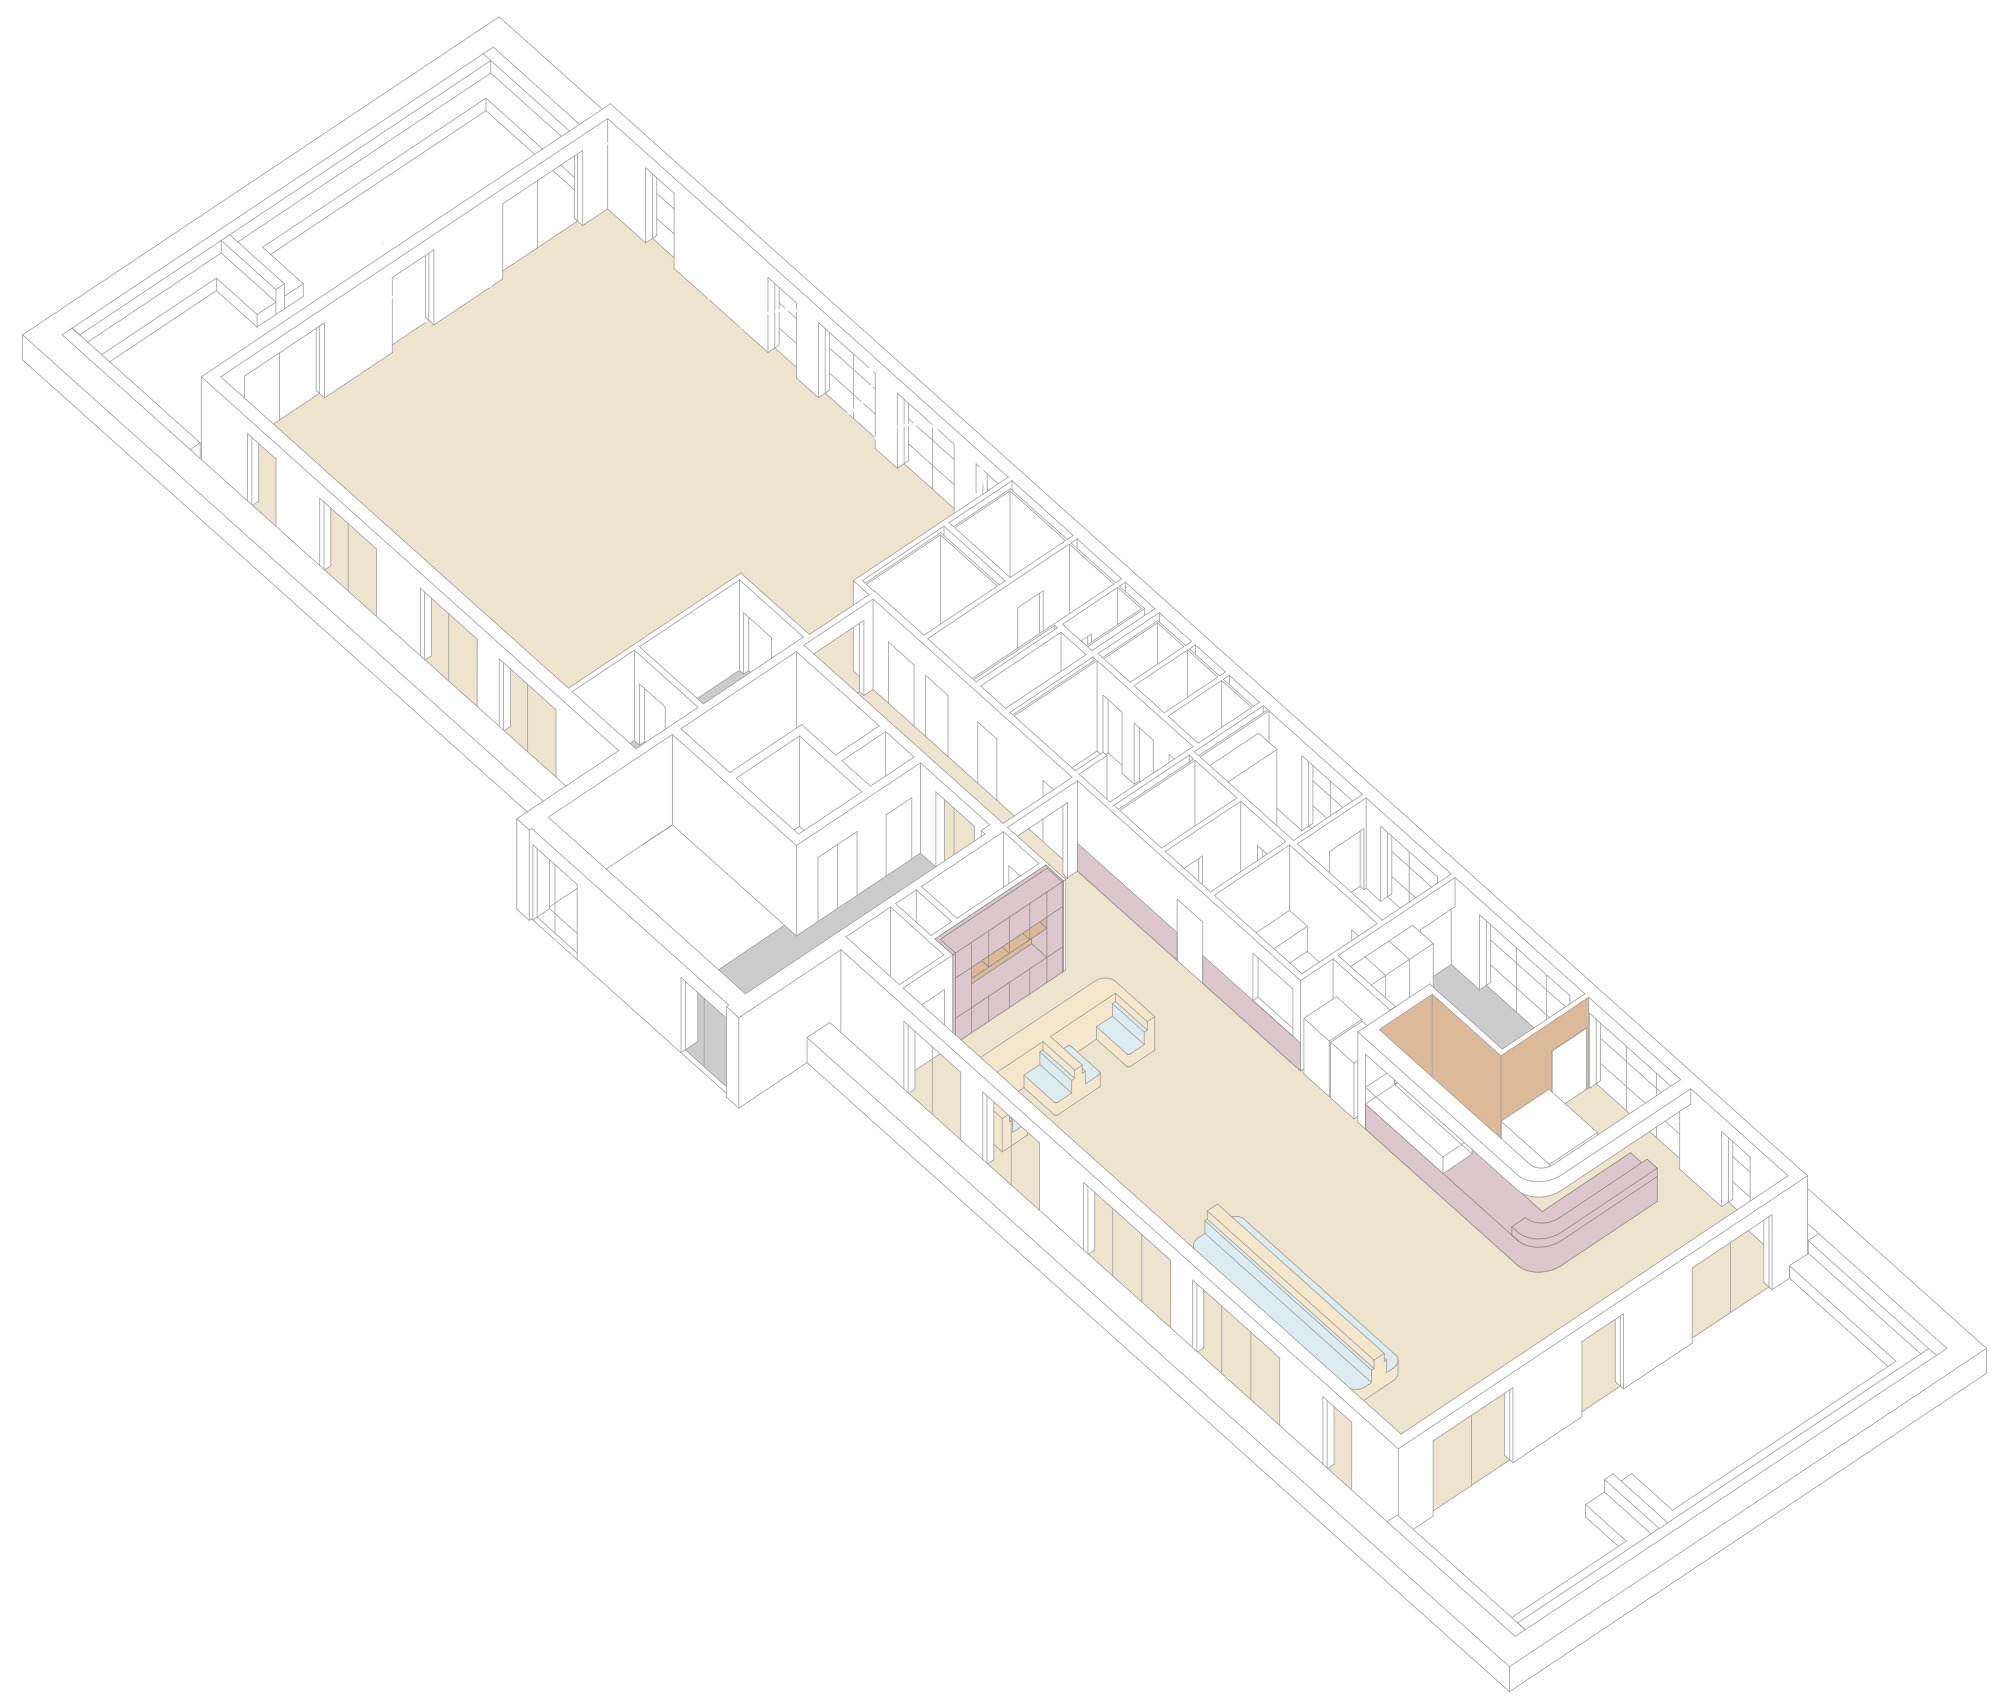 Staffelgeschoss - Raumflächen und Einbauten